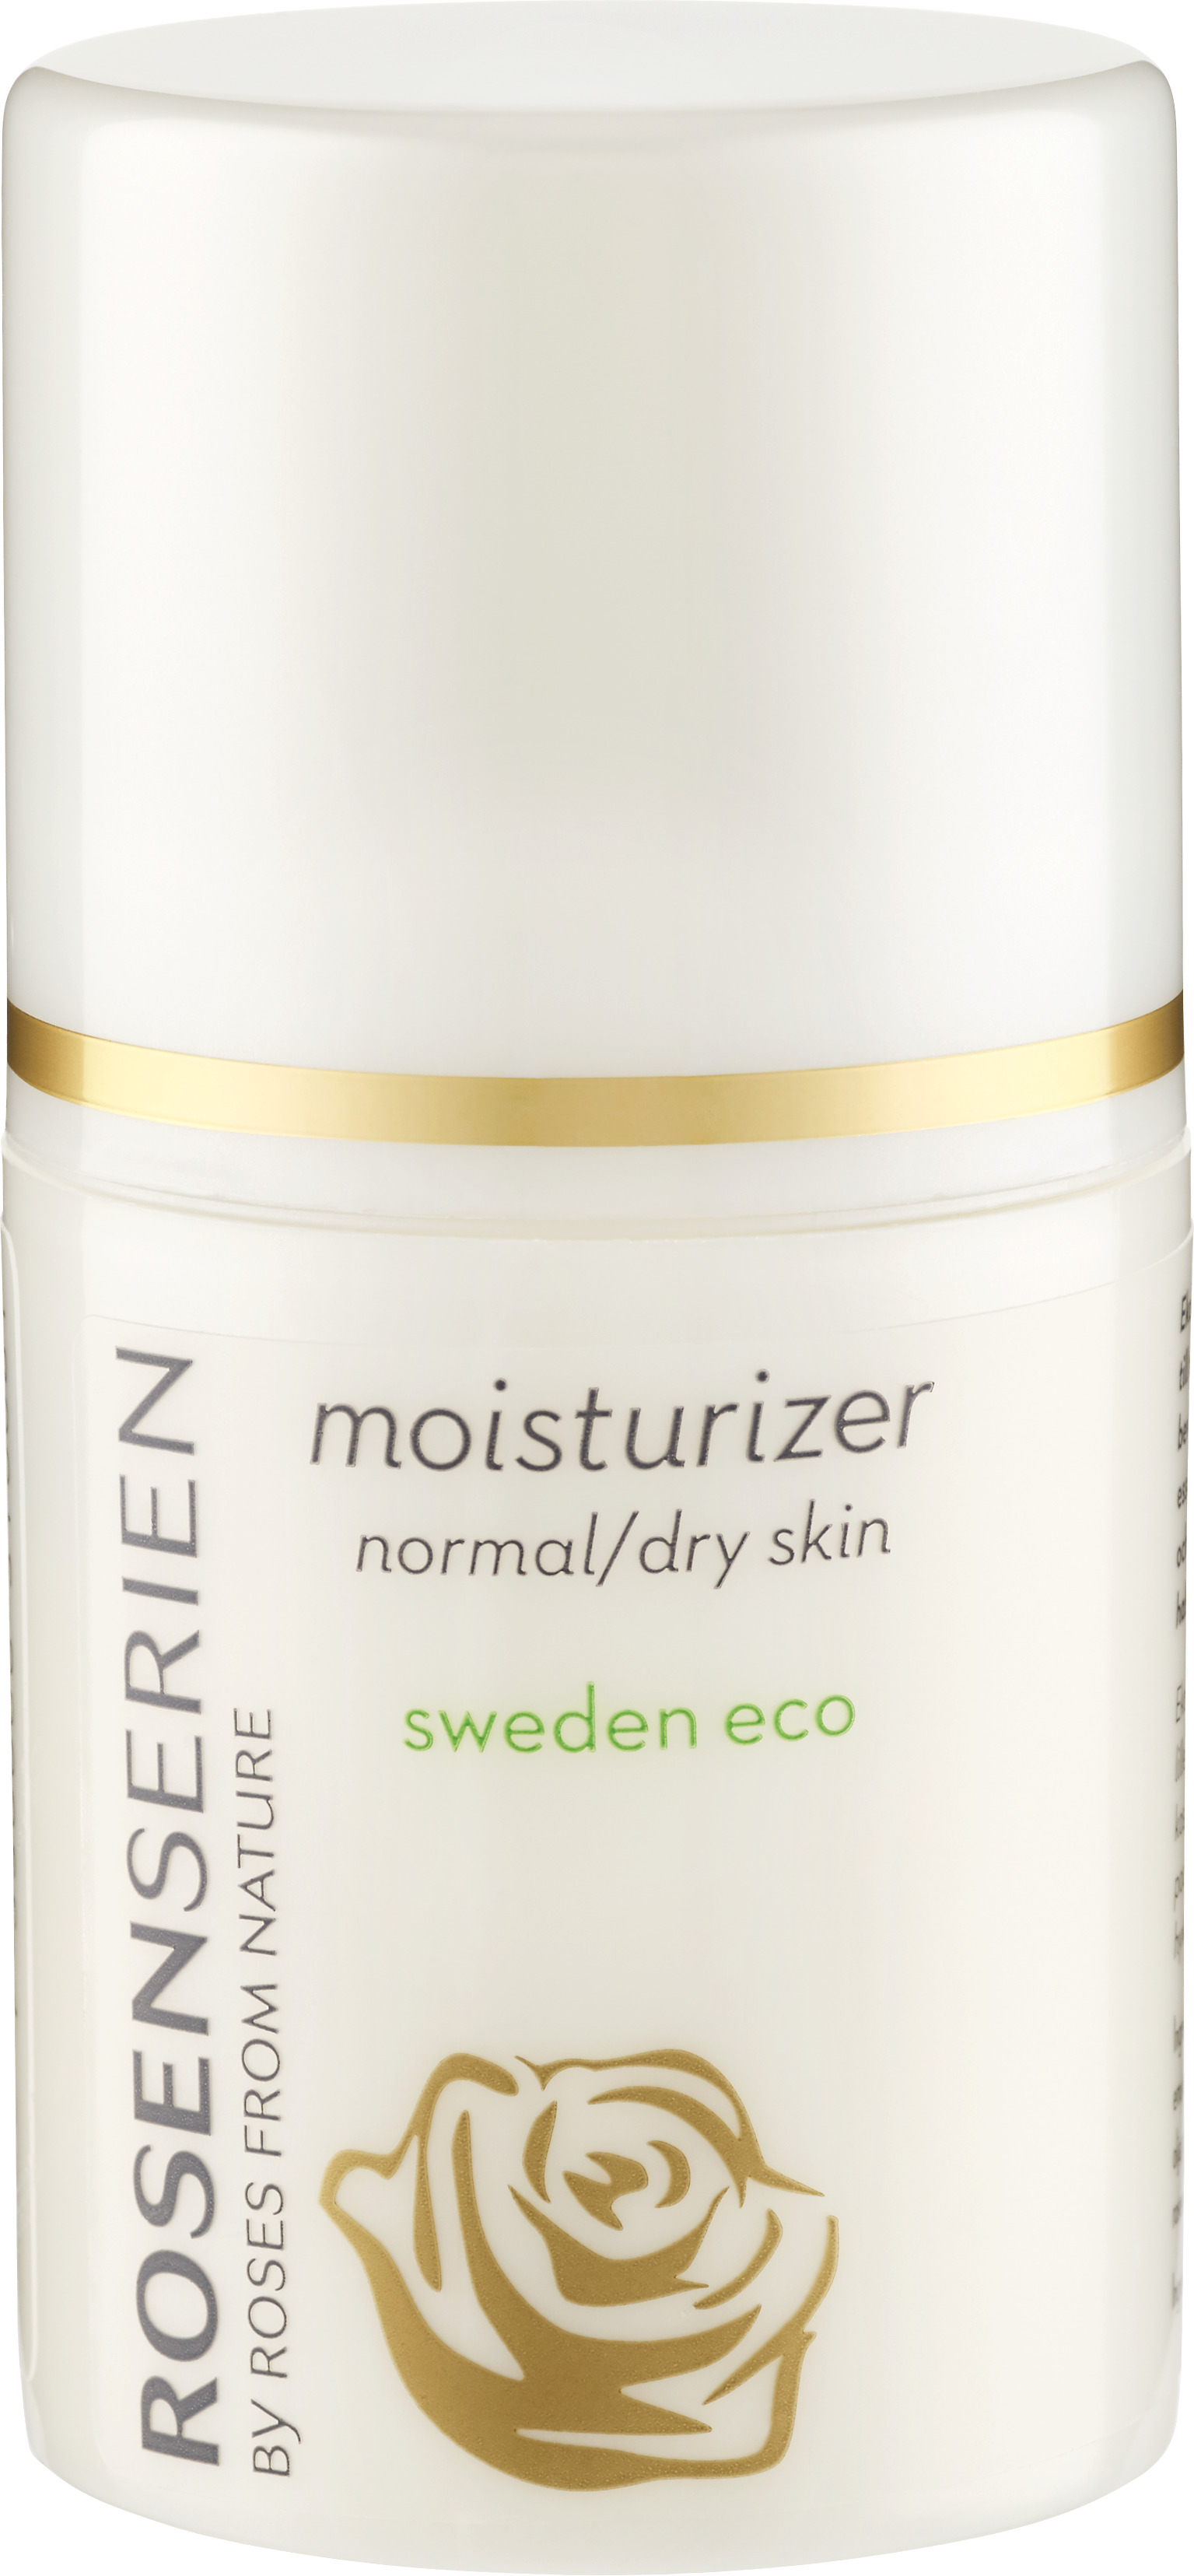 Rosenserien Moisturizer Normal/Dry Skin 50 ml